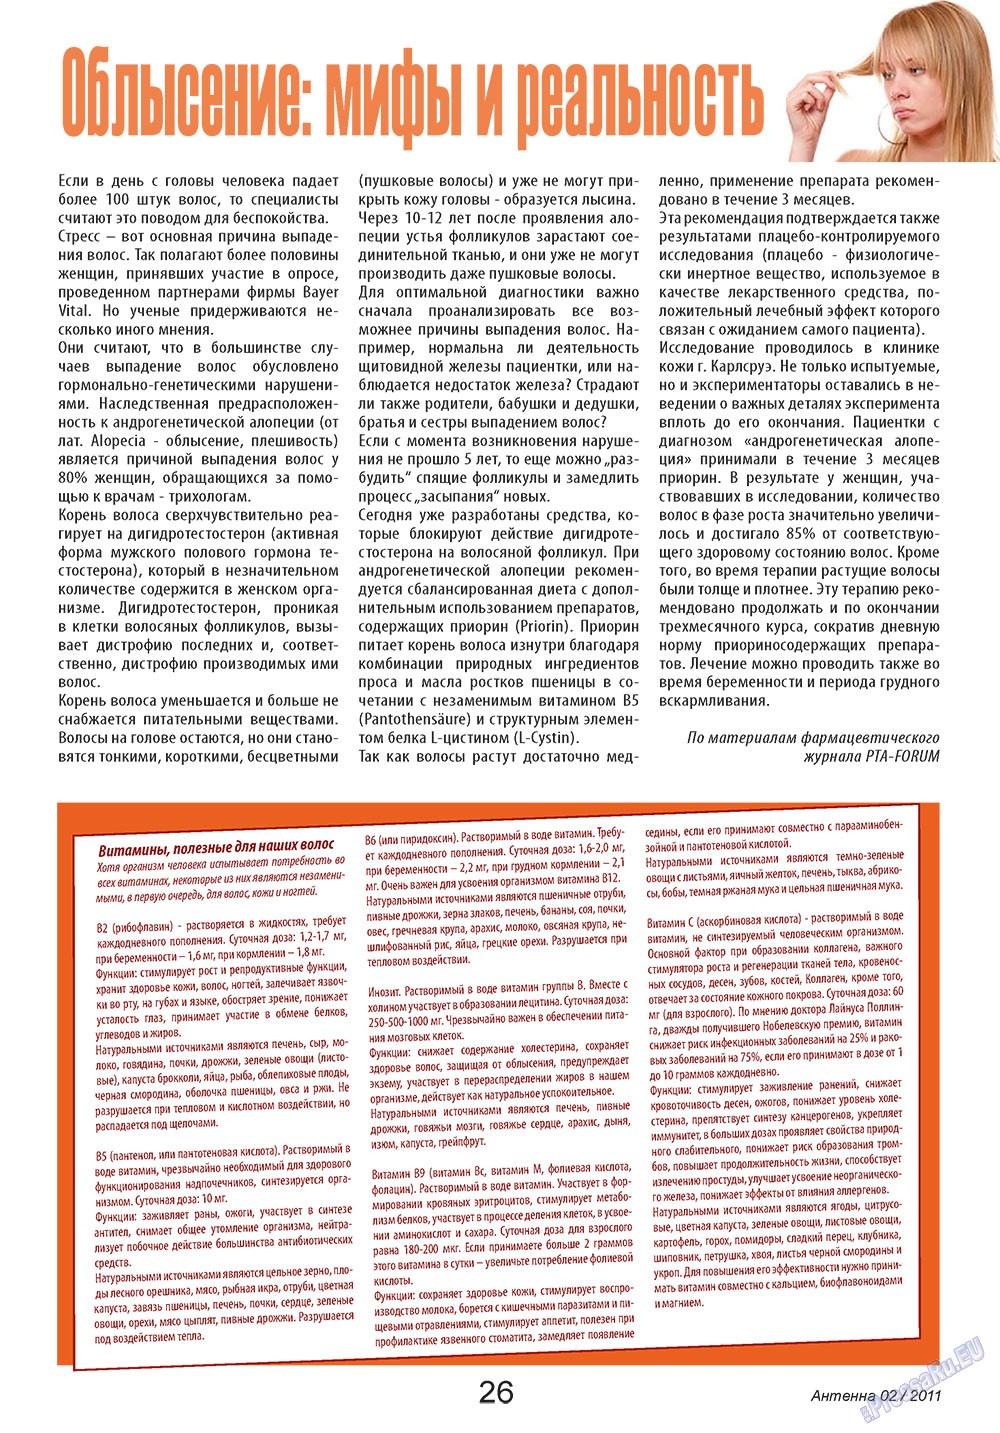 Антенна, журнал. 2011 №2 стр.26